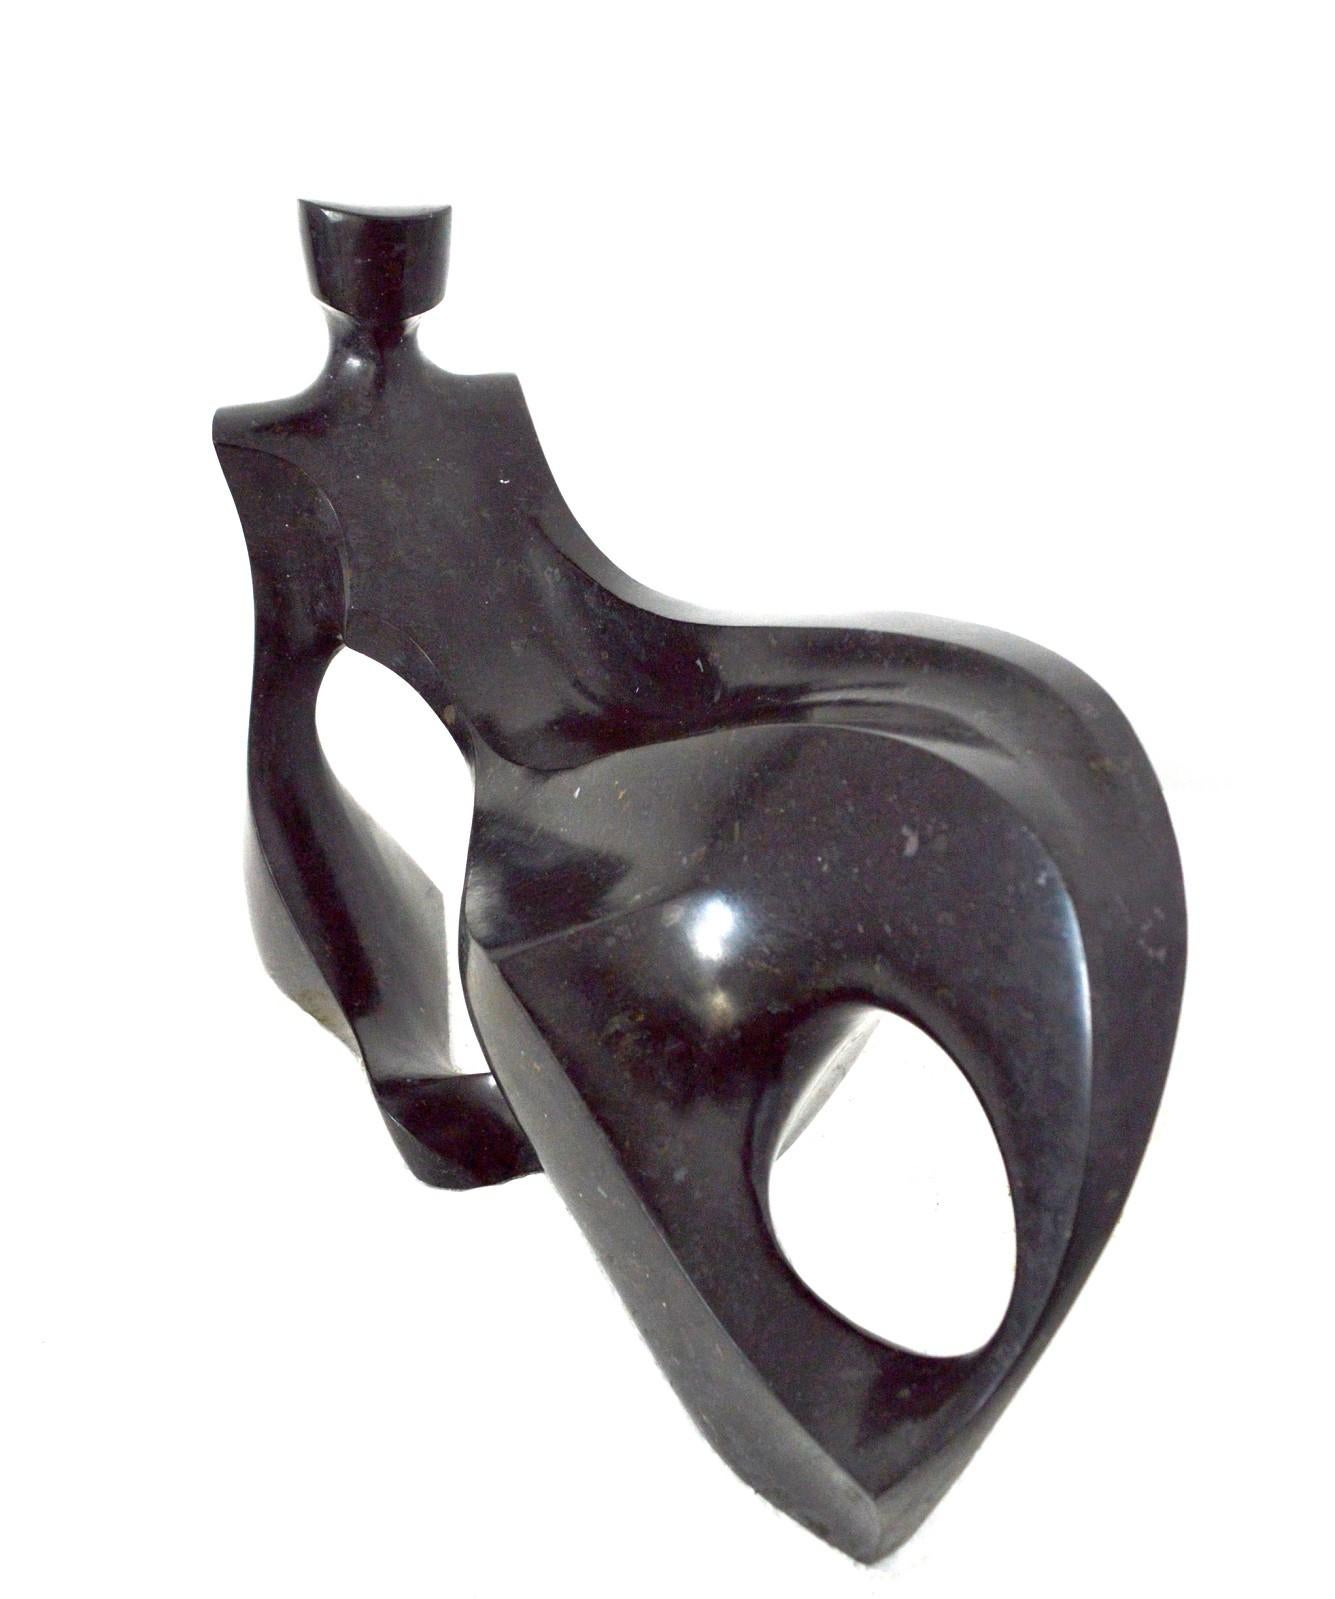 Repose 6/50 - granit noir, lisse, sculpture figurative de table